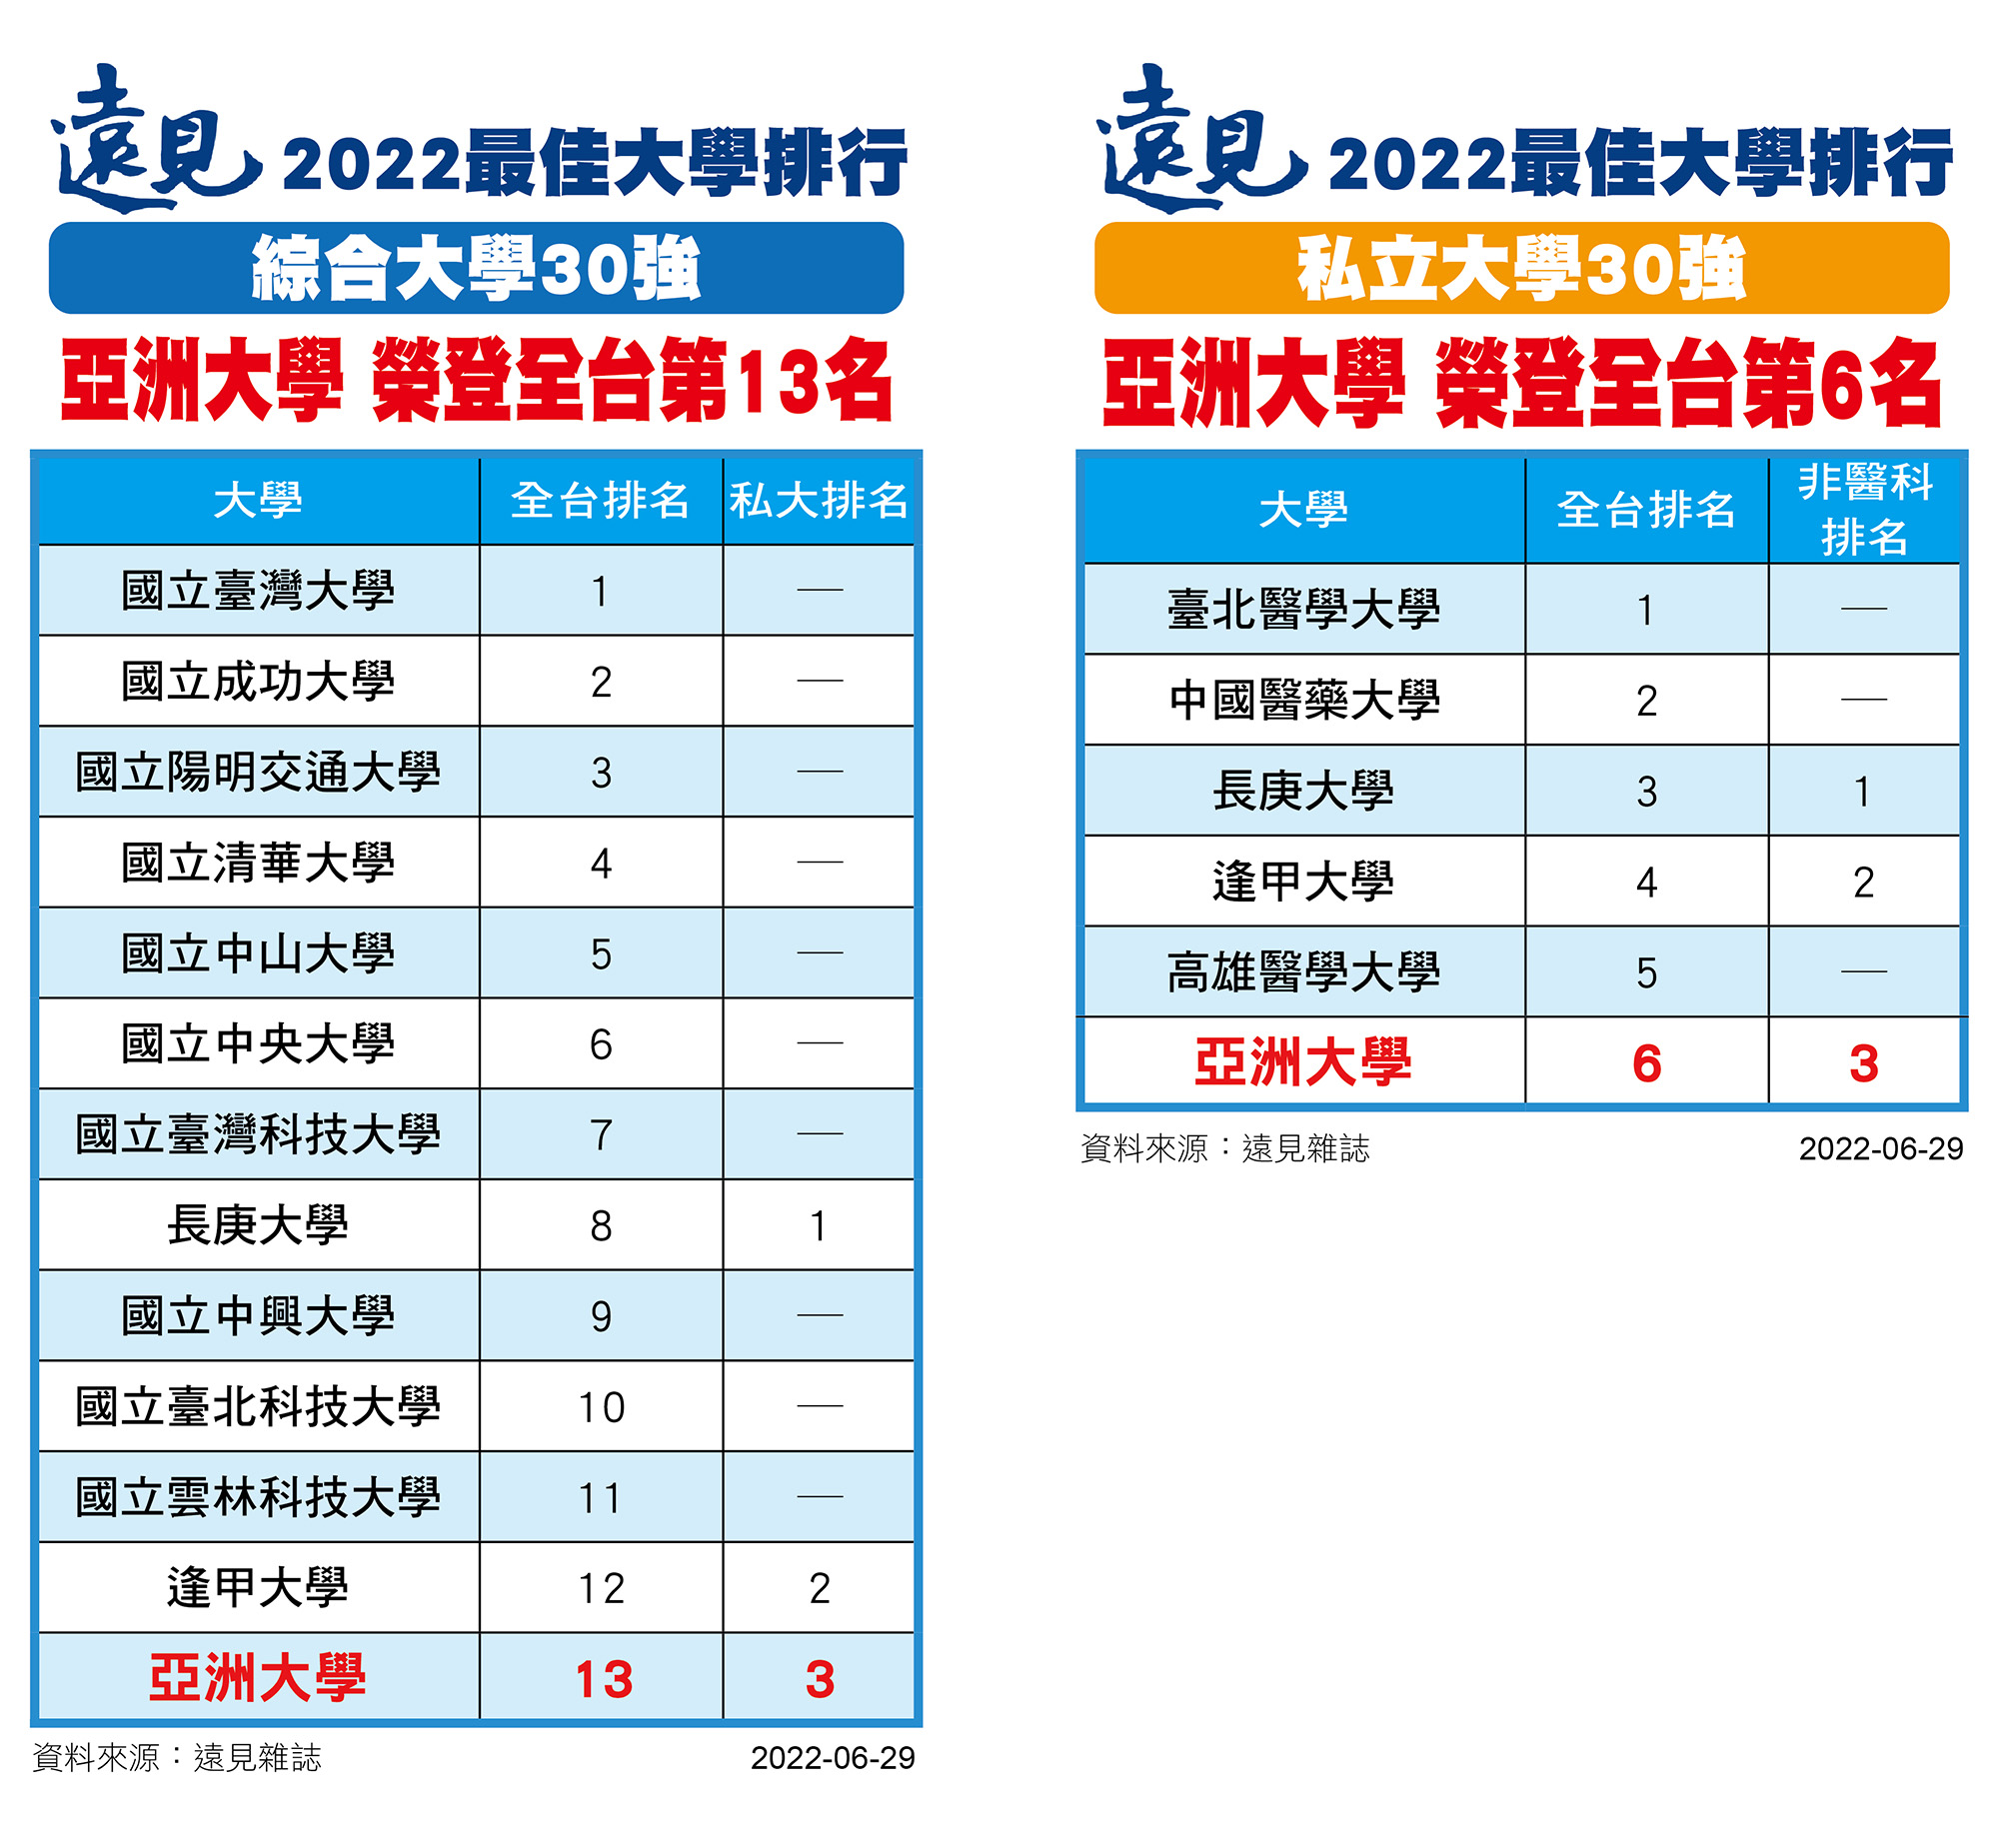 《遠見雜誌》2022年「台灣最佳大學」排行榜出爐，亞大在「綜合大學30強」中，名列第13名，私大第3名；亞大在「私立大學30強」，排第6名，非醫科排第3名